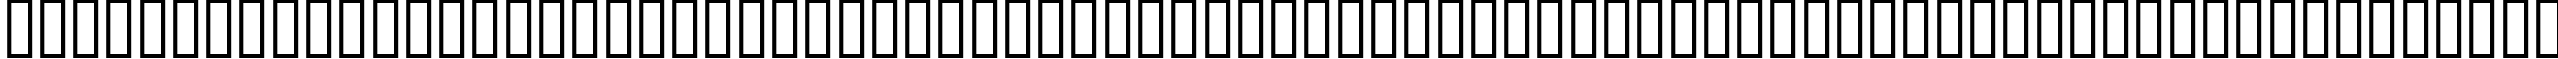 Пример написания английского алфавита шрифтом CASMIRA